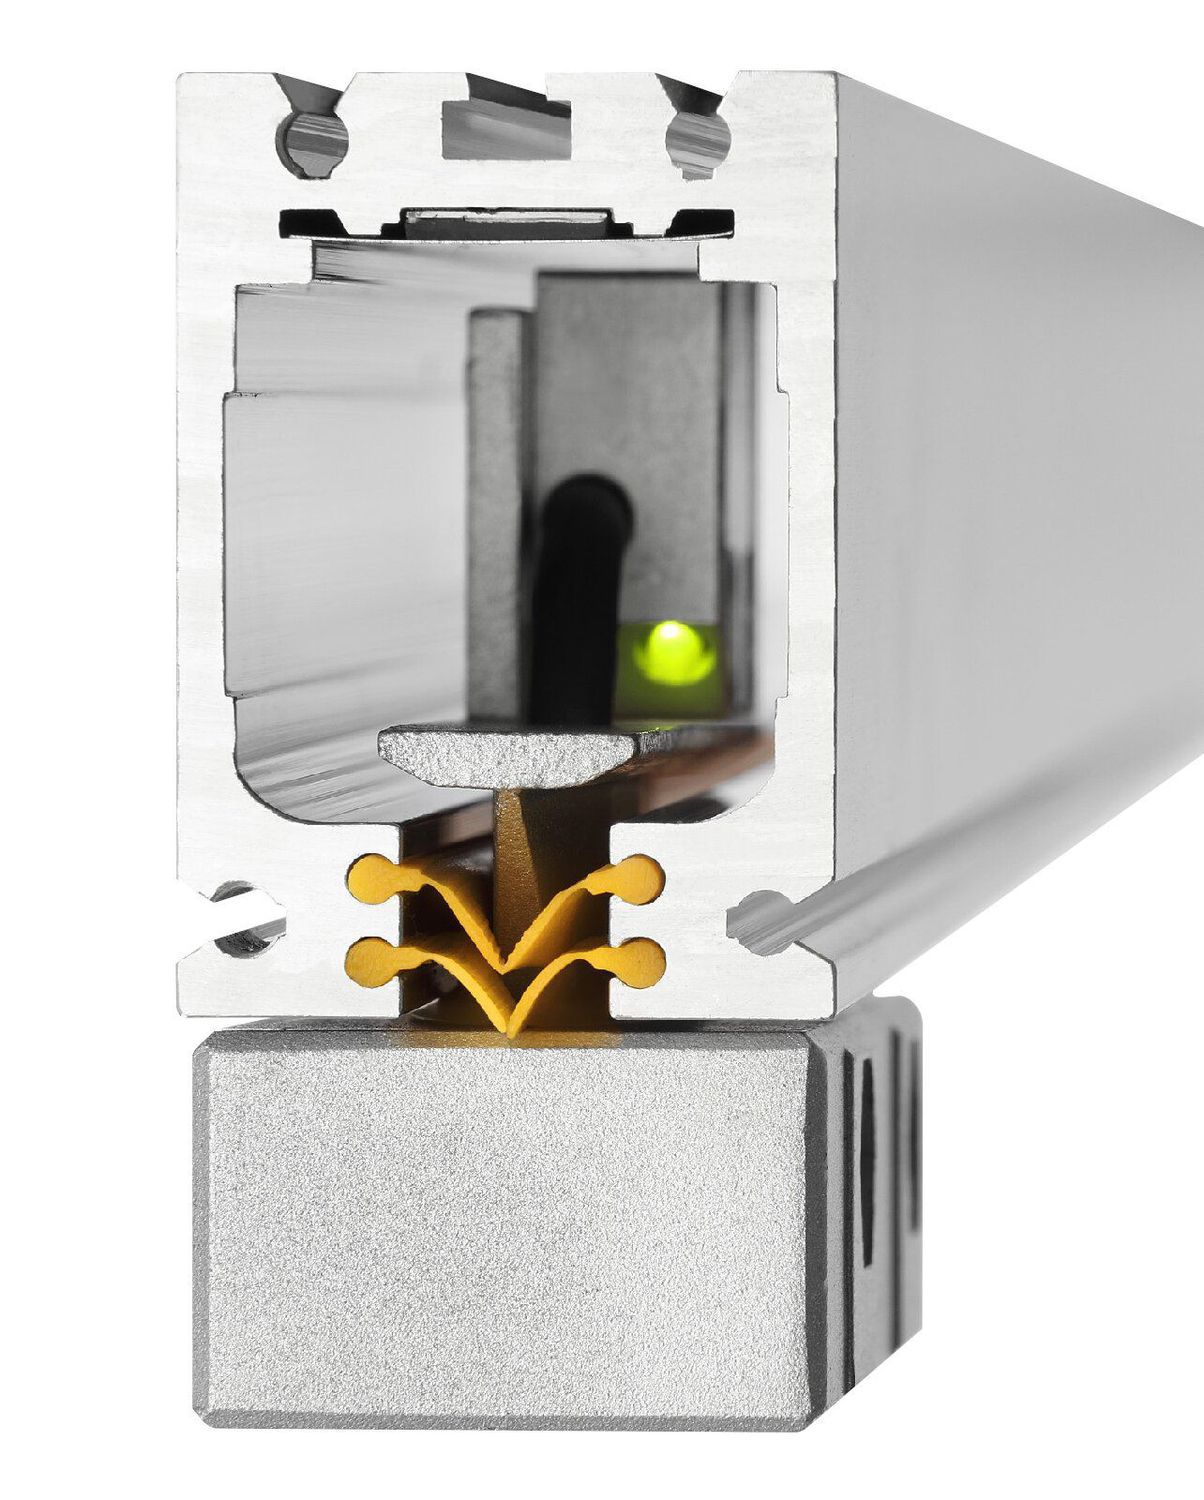 K+C Magnetmaßstab MSX 400 mm - 5 µm | Verfahrweg 410 mm